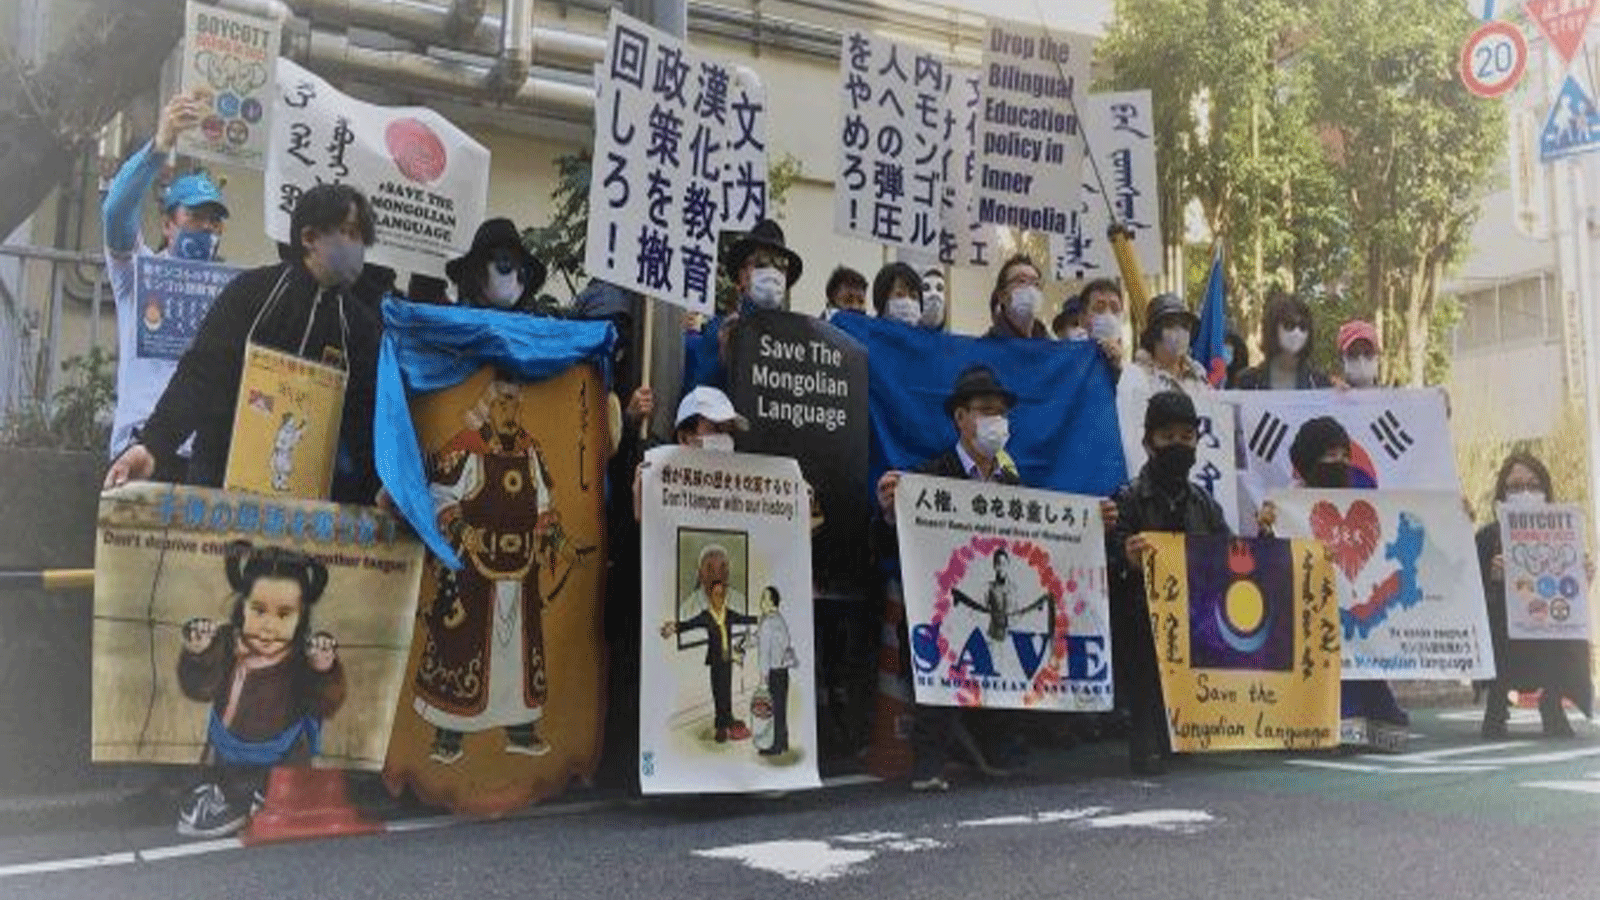 لقطة أرشيفية لمغول يتظاهرون في 21 فبراير، اليوم العالمي للغة الأم، في اليابان والسويد ومنغوليا وعدة دول لدعم حقوق اللغة الأم لمنغوليا الداخلية